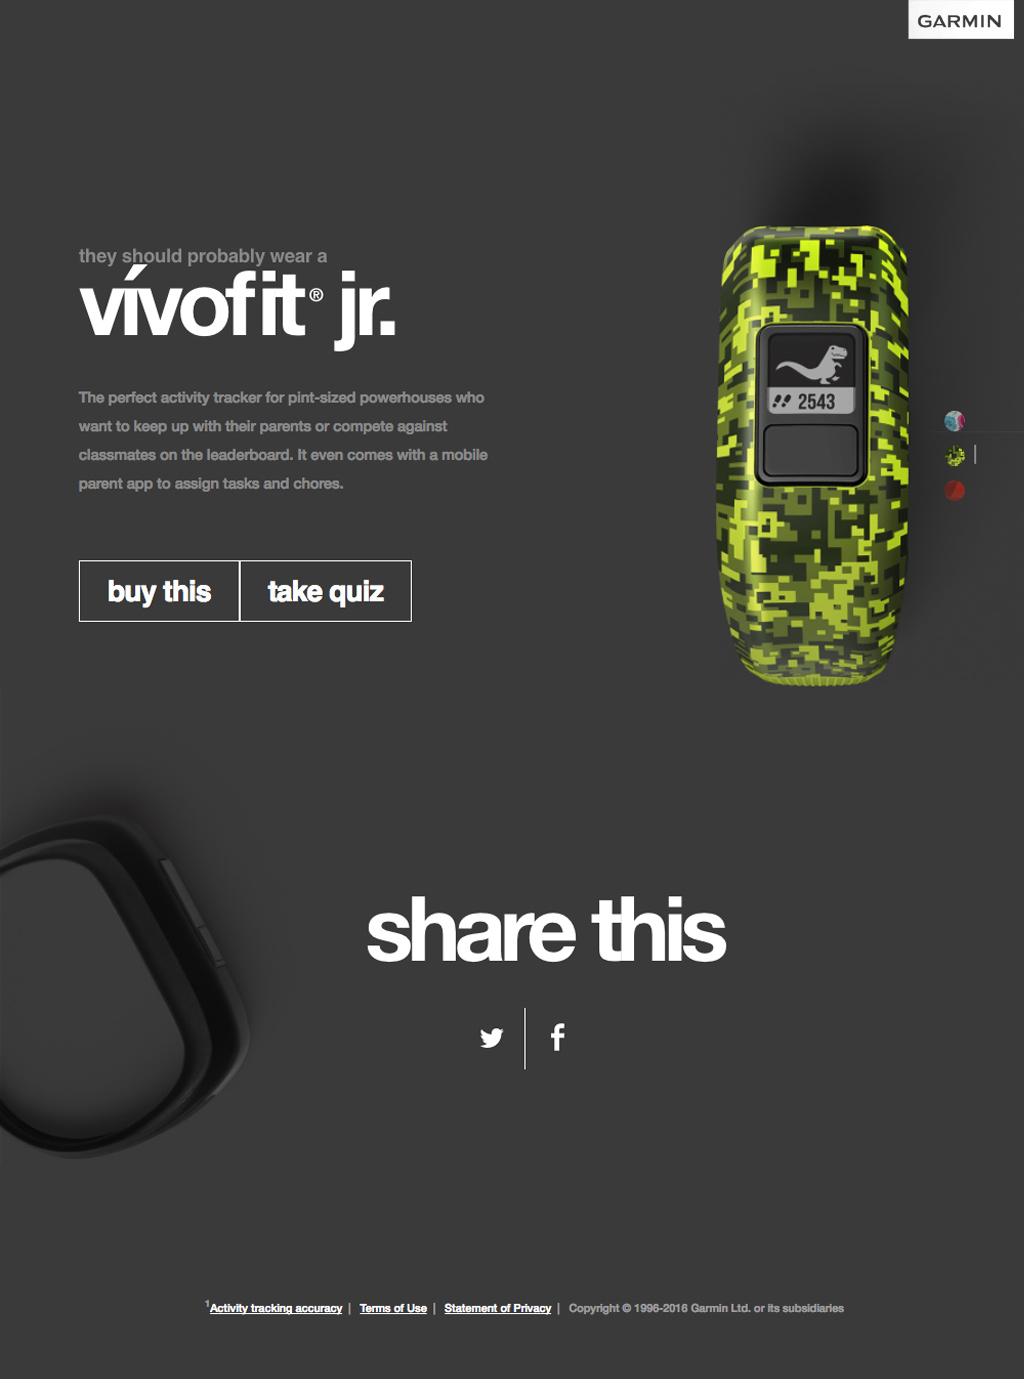 vivofit Jr. product page